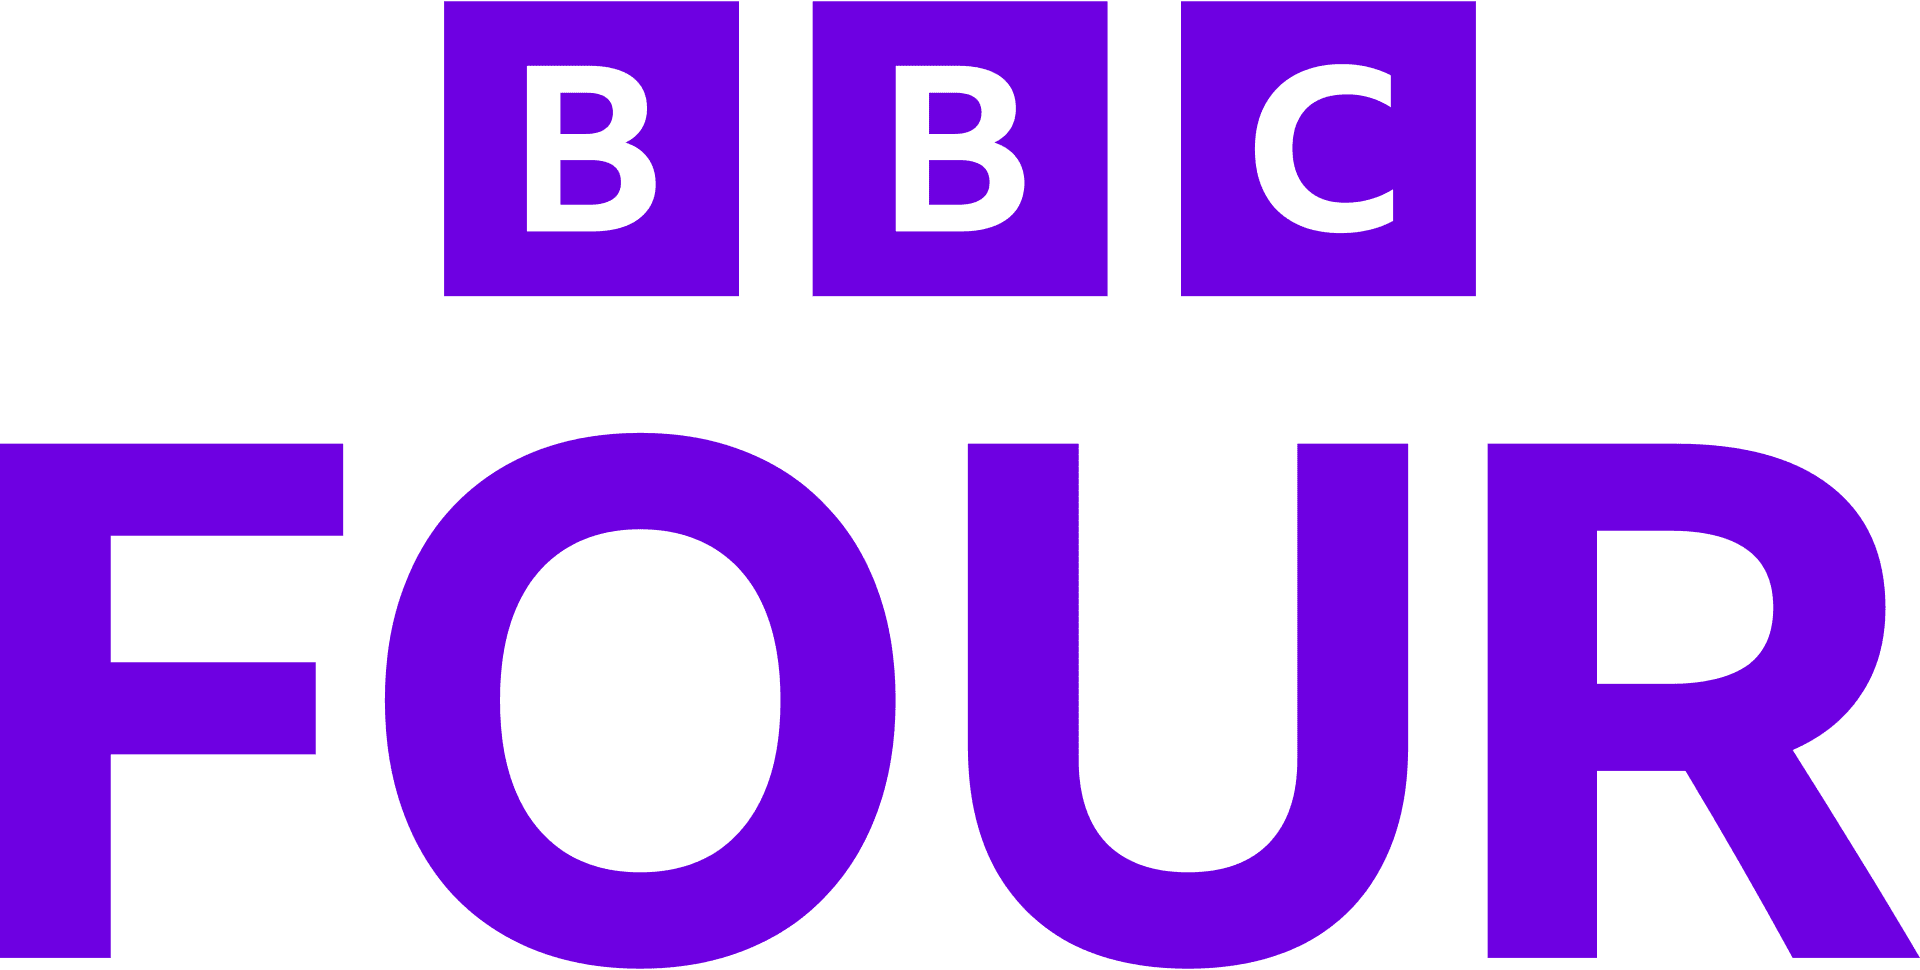 BBC_Four_logo_2021.svg